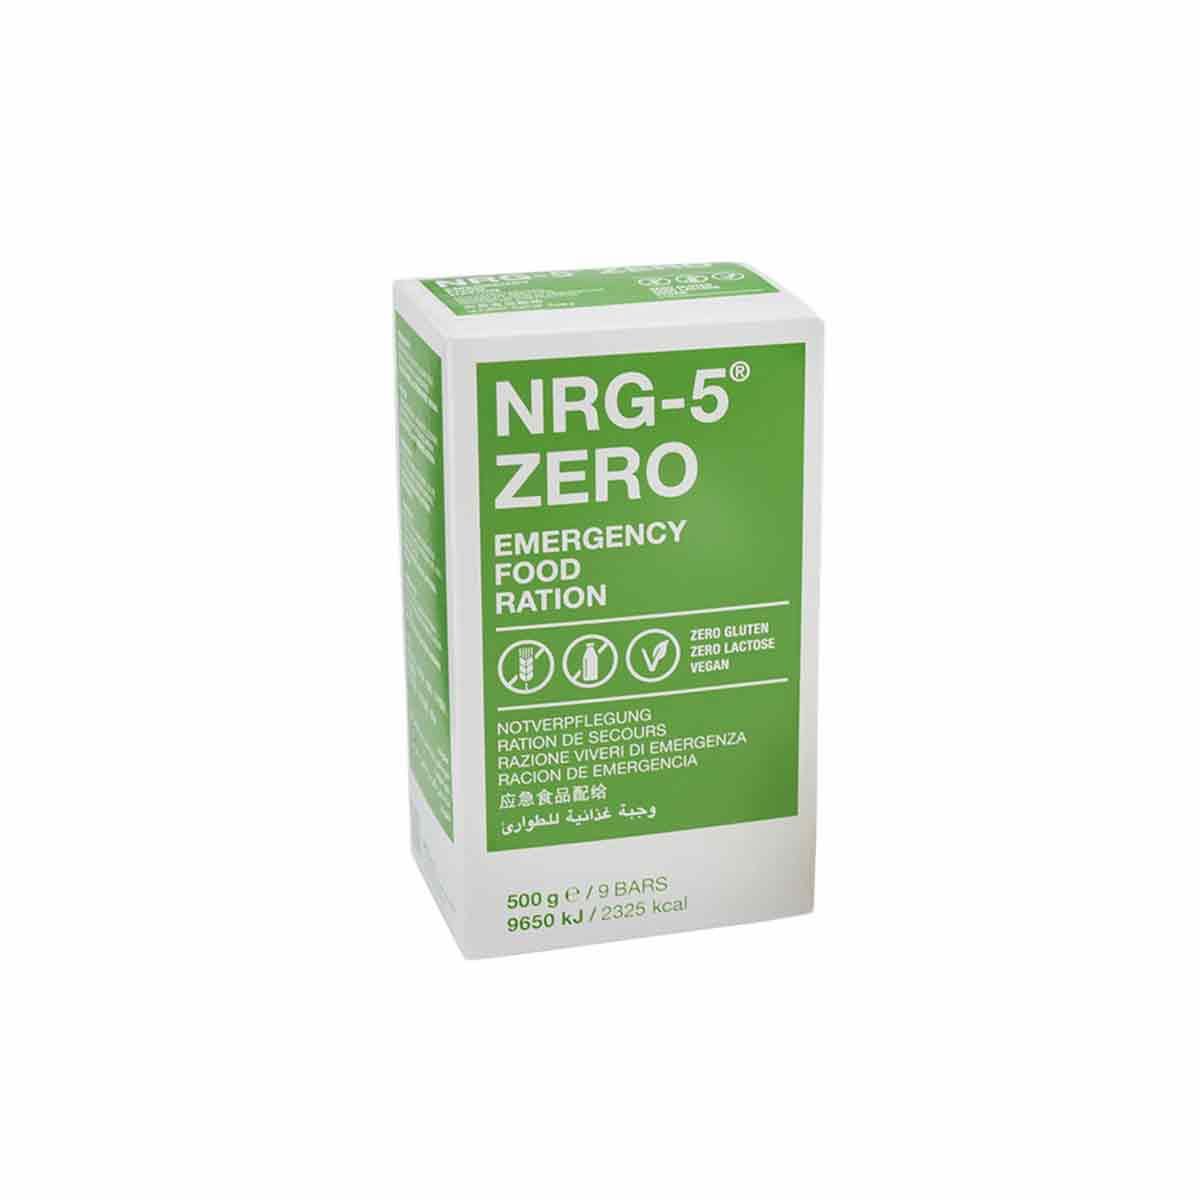 Ración de emergencia NRG-5 ZERO sin gluten - 15 años